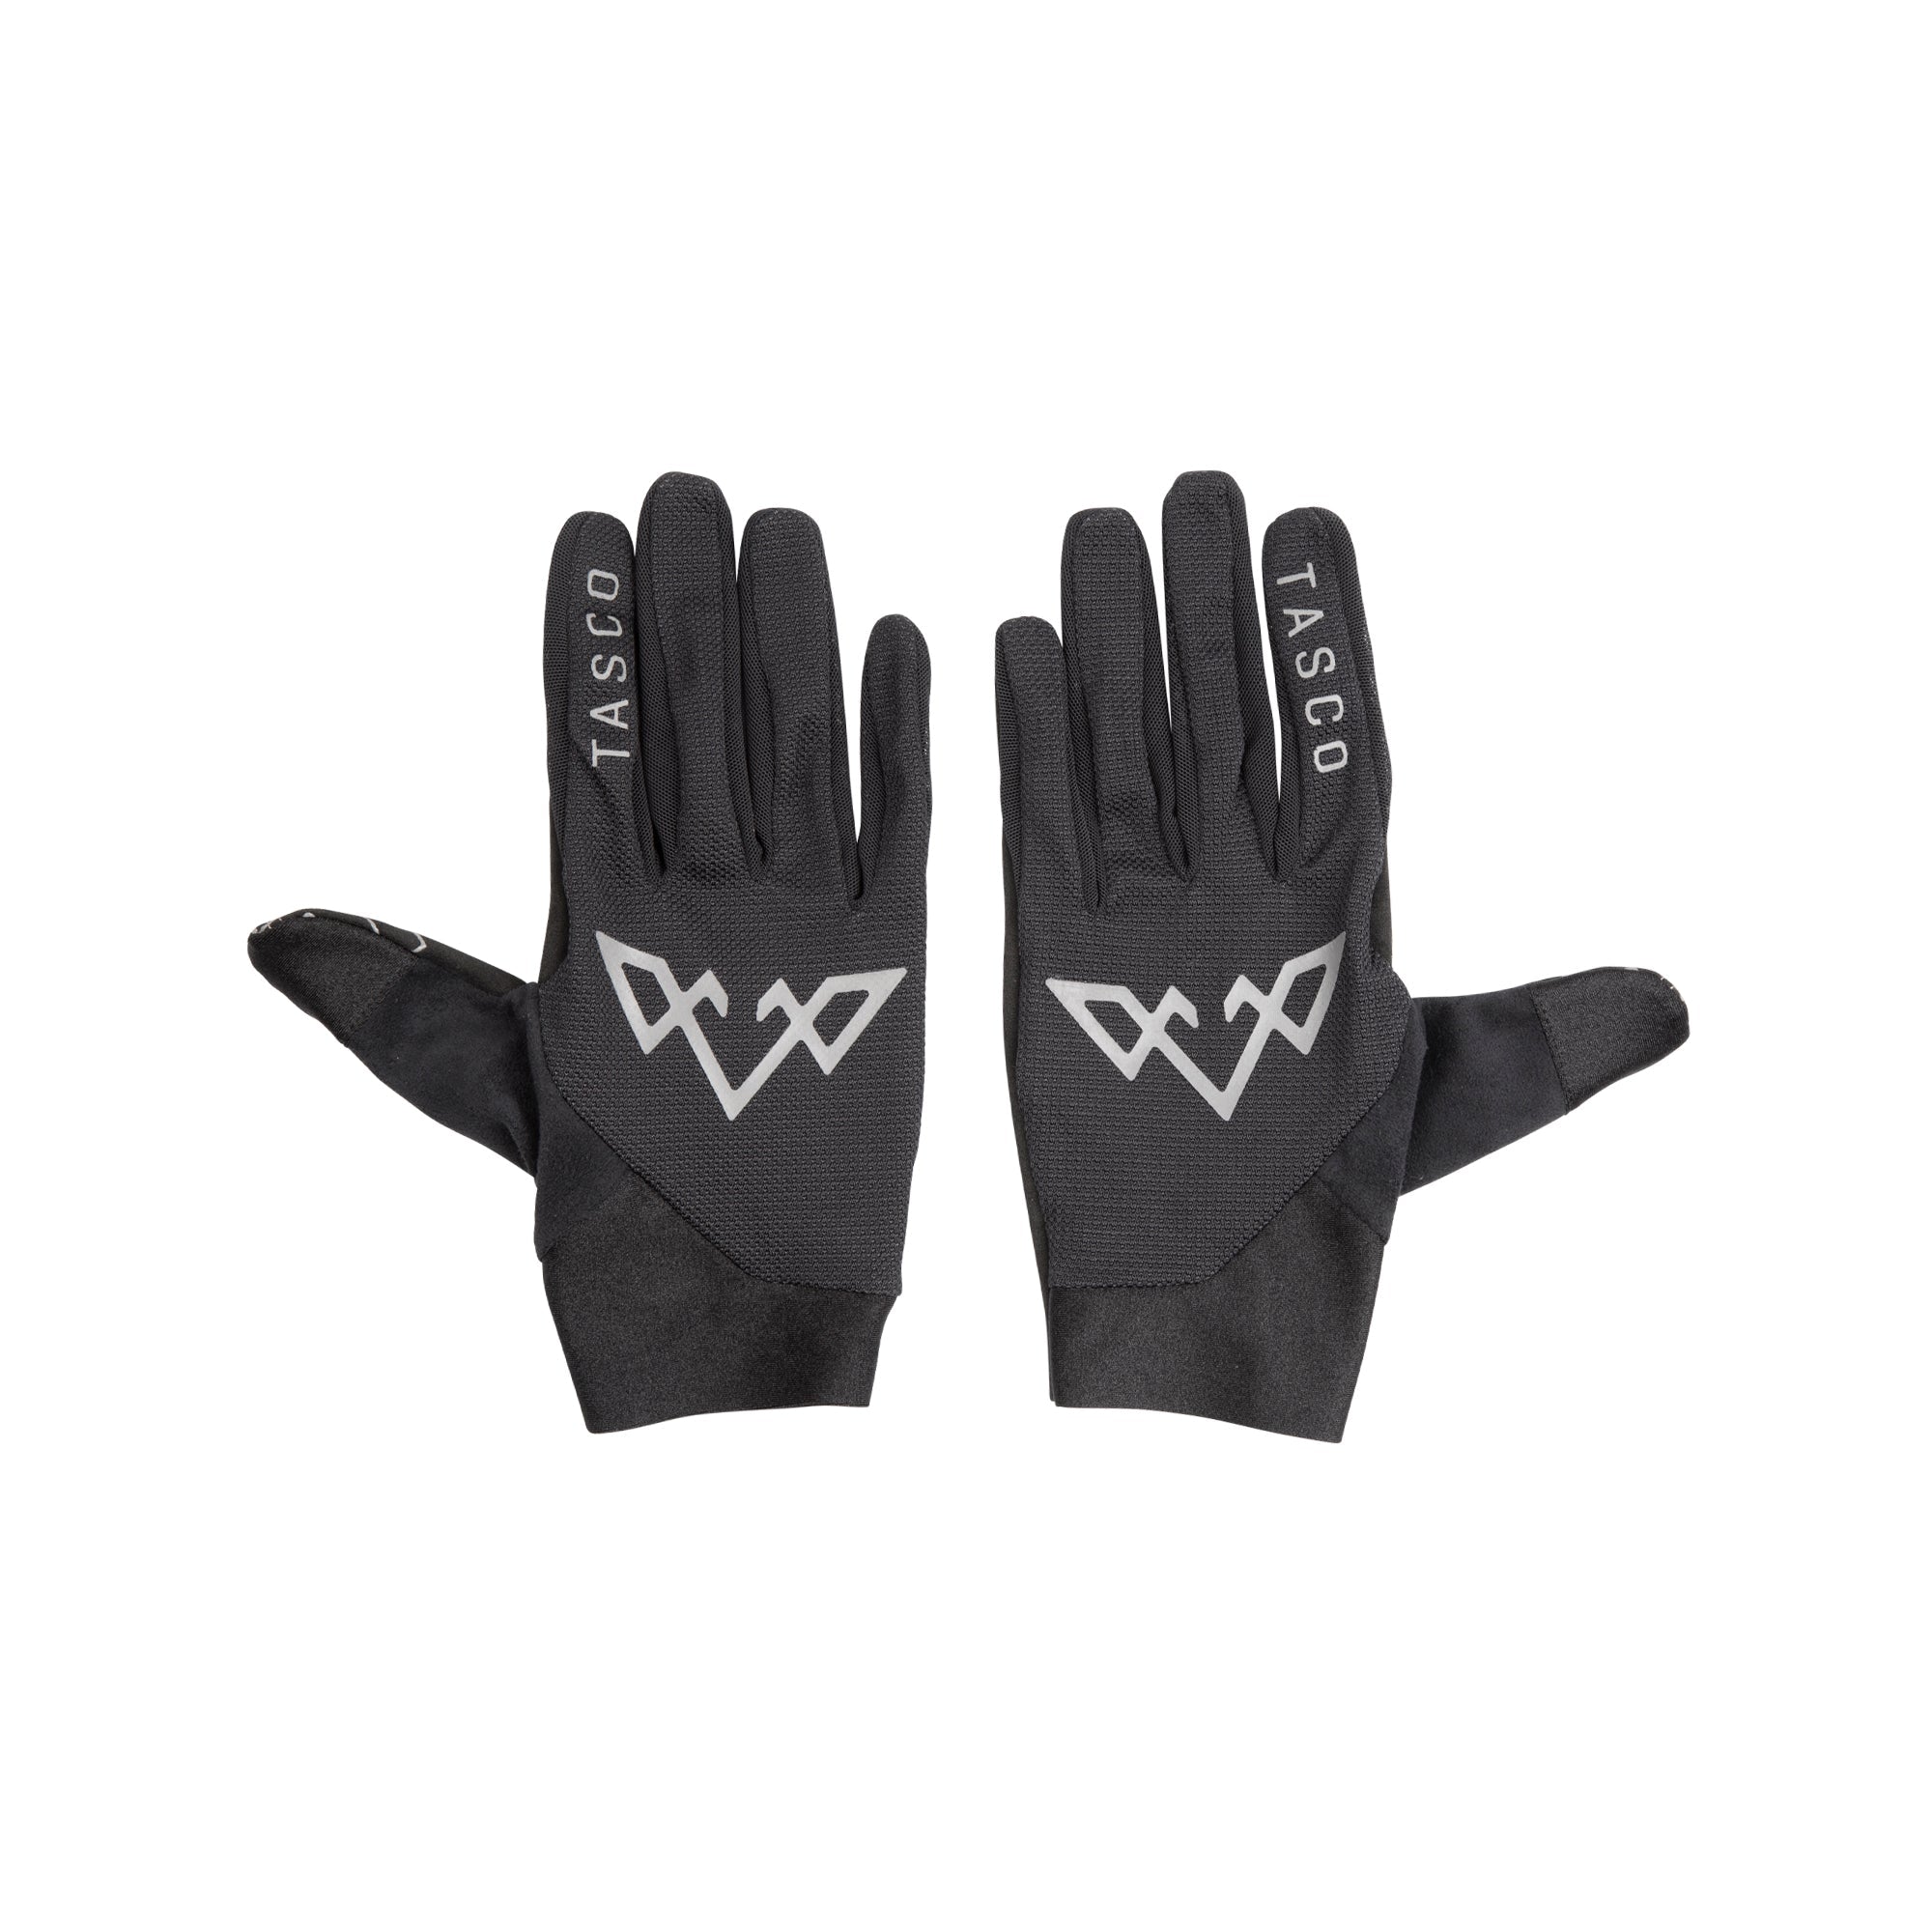 Fantom Ultralite Gloves - Black